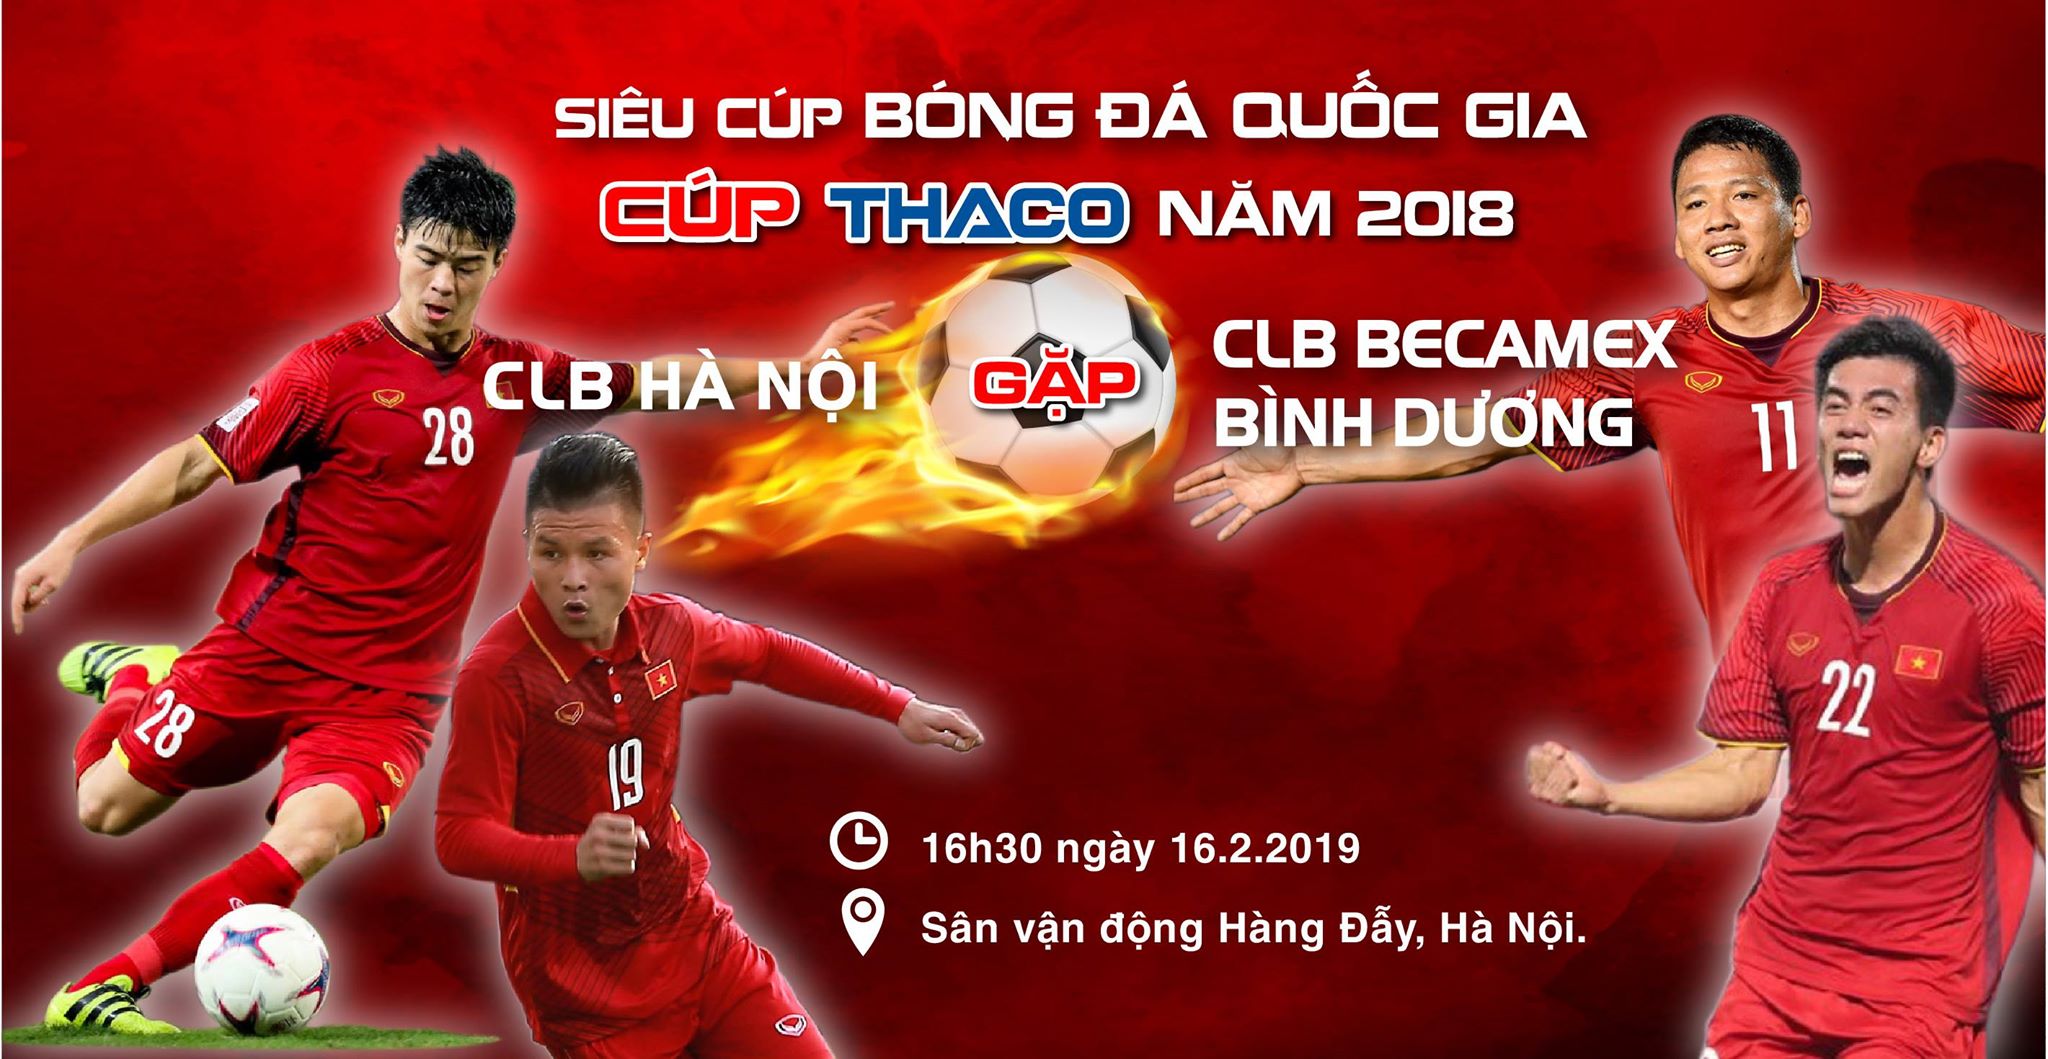 Vé xem Quang Hải đá trận Siêu Cúp Quốc gia 2018 giá bao nhiêu và mua ở đâu?